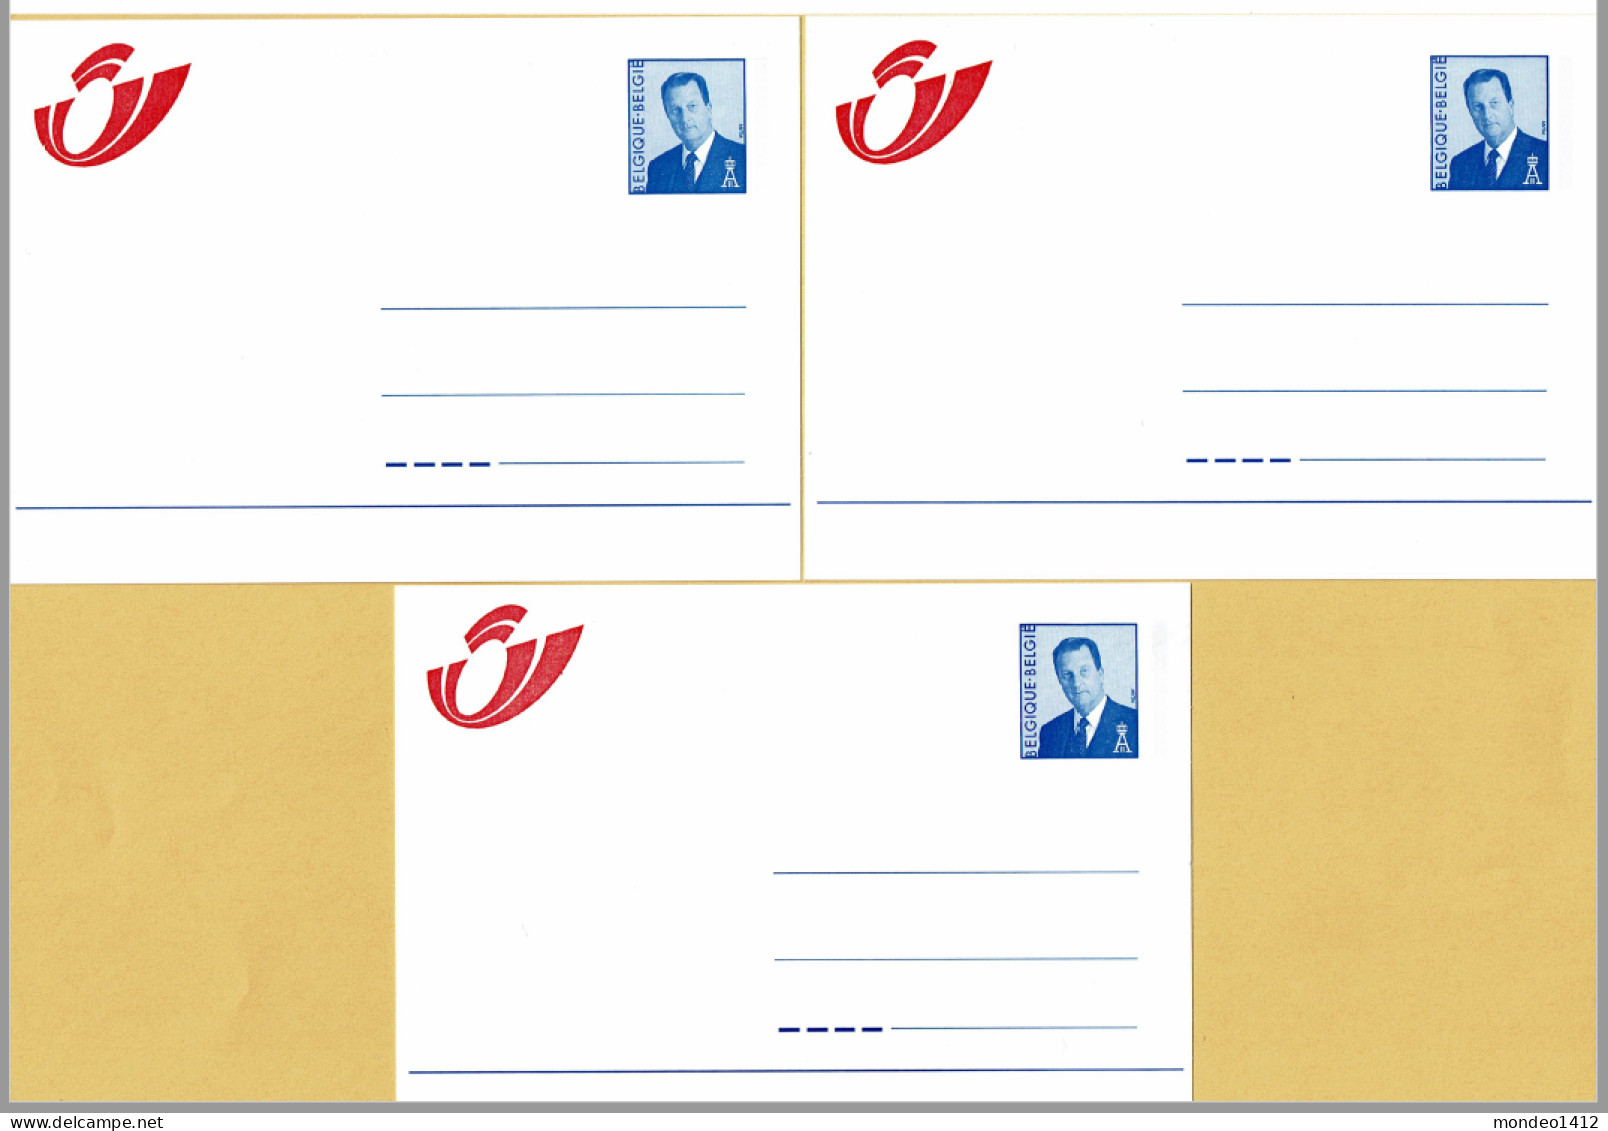 1998 - Briefkaarten - Mutapost Nieuw Postlogo - Adresverandering - Compleet N-F-D - Adressenänderungen